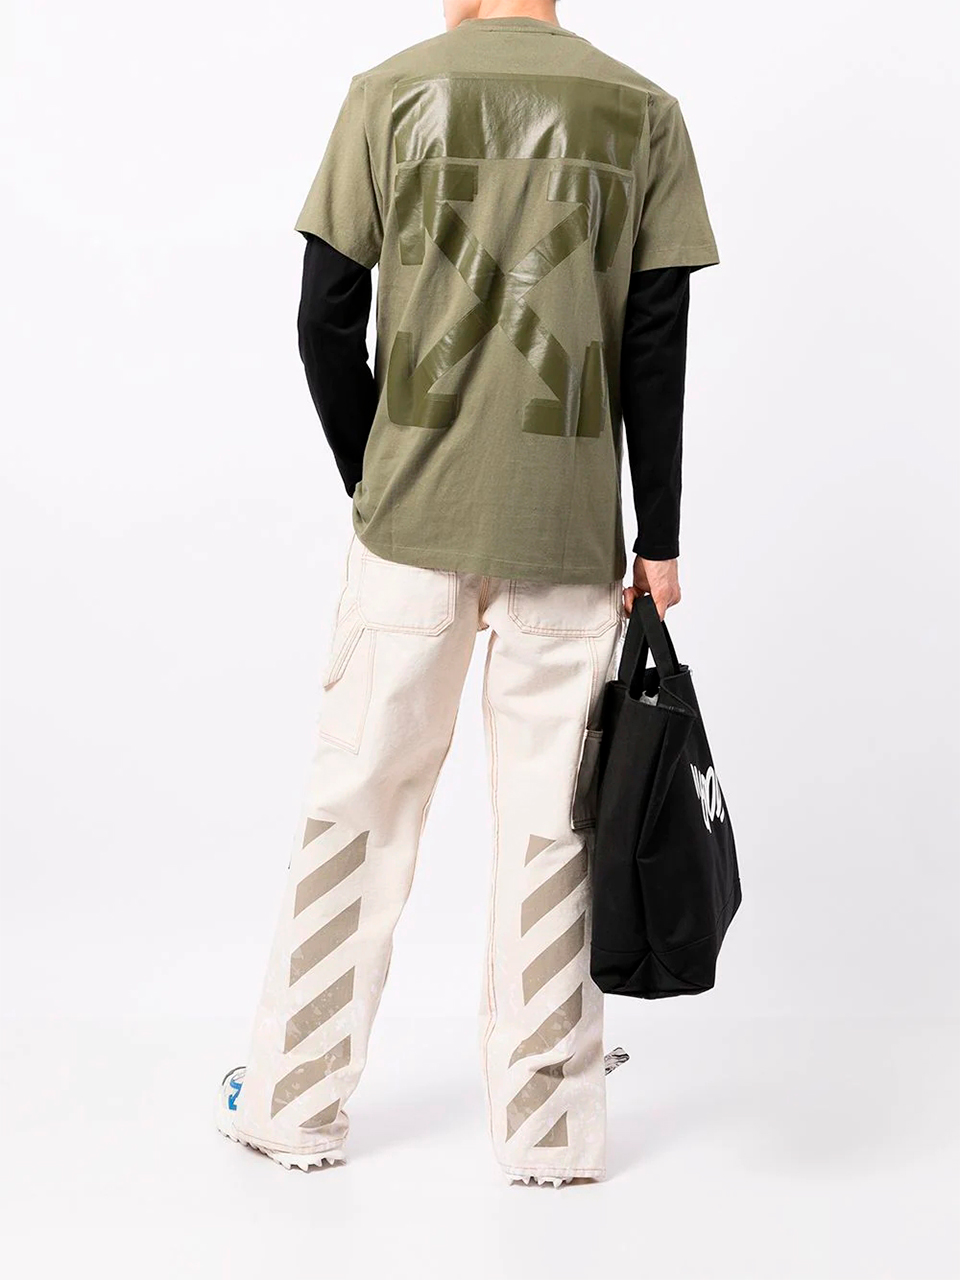 Imagem de: Camiseta Off-White Verde Musgo com Estampa Setas